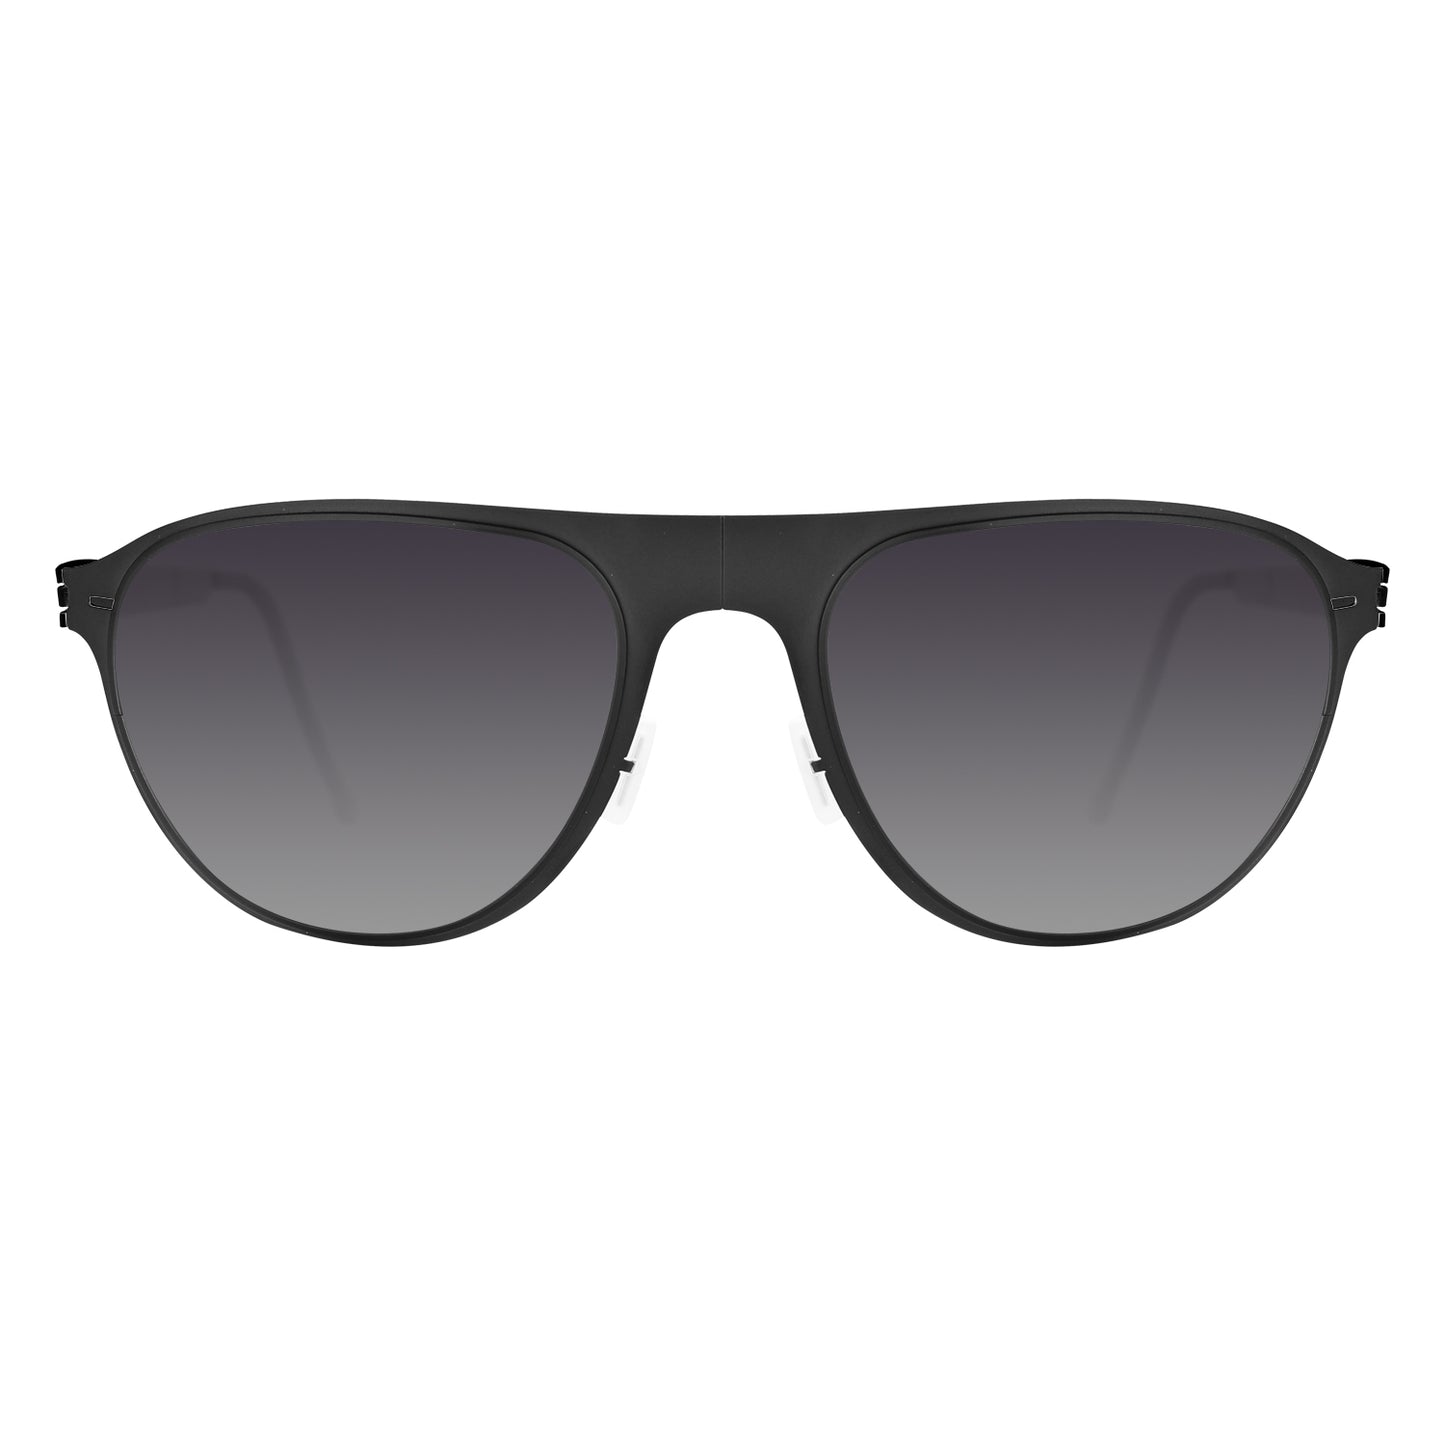 馬格南系列-摺疊式太陽眼鏡│超輕極薄‧放進口袋